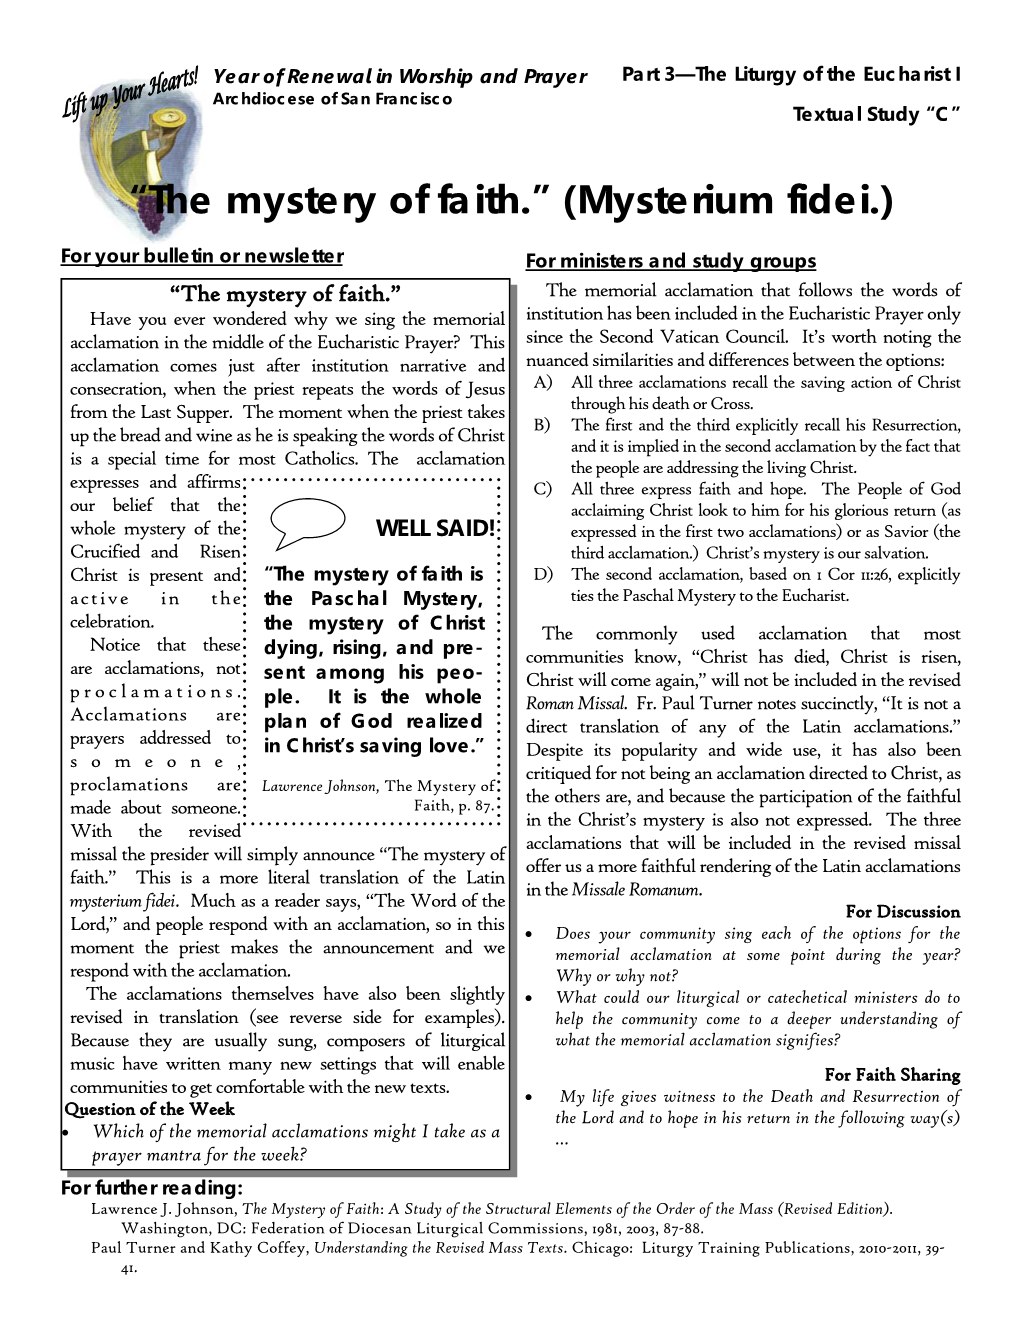 “The Mystery of Faith.” (Mysterium Fidei)